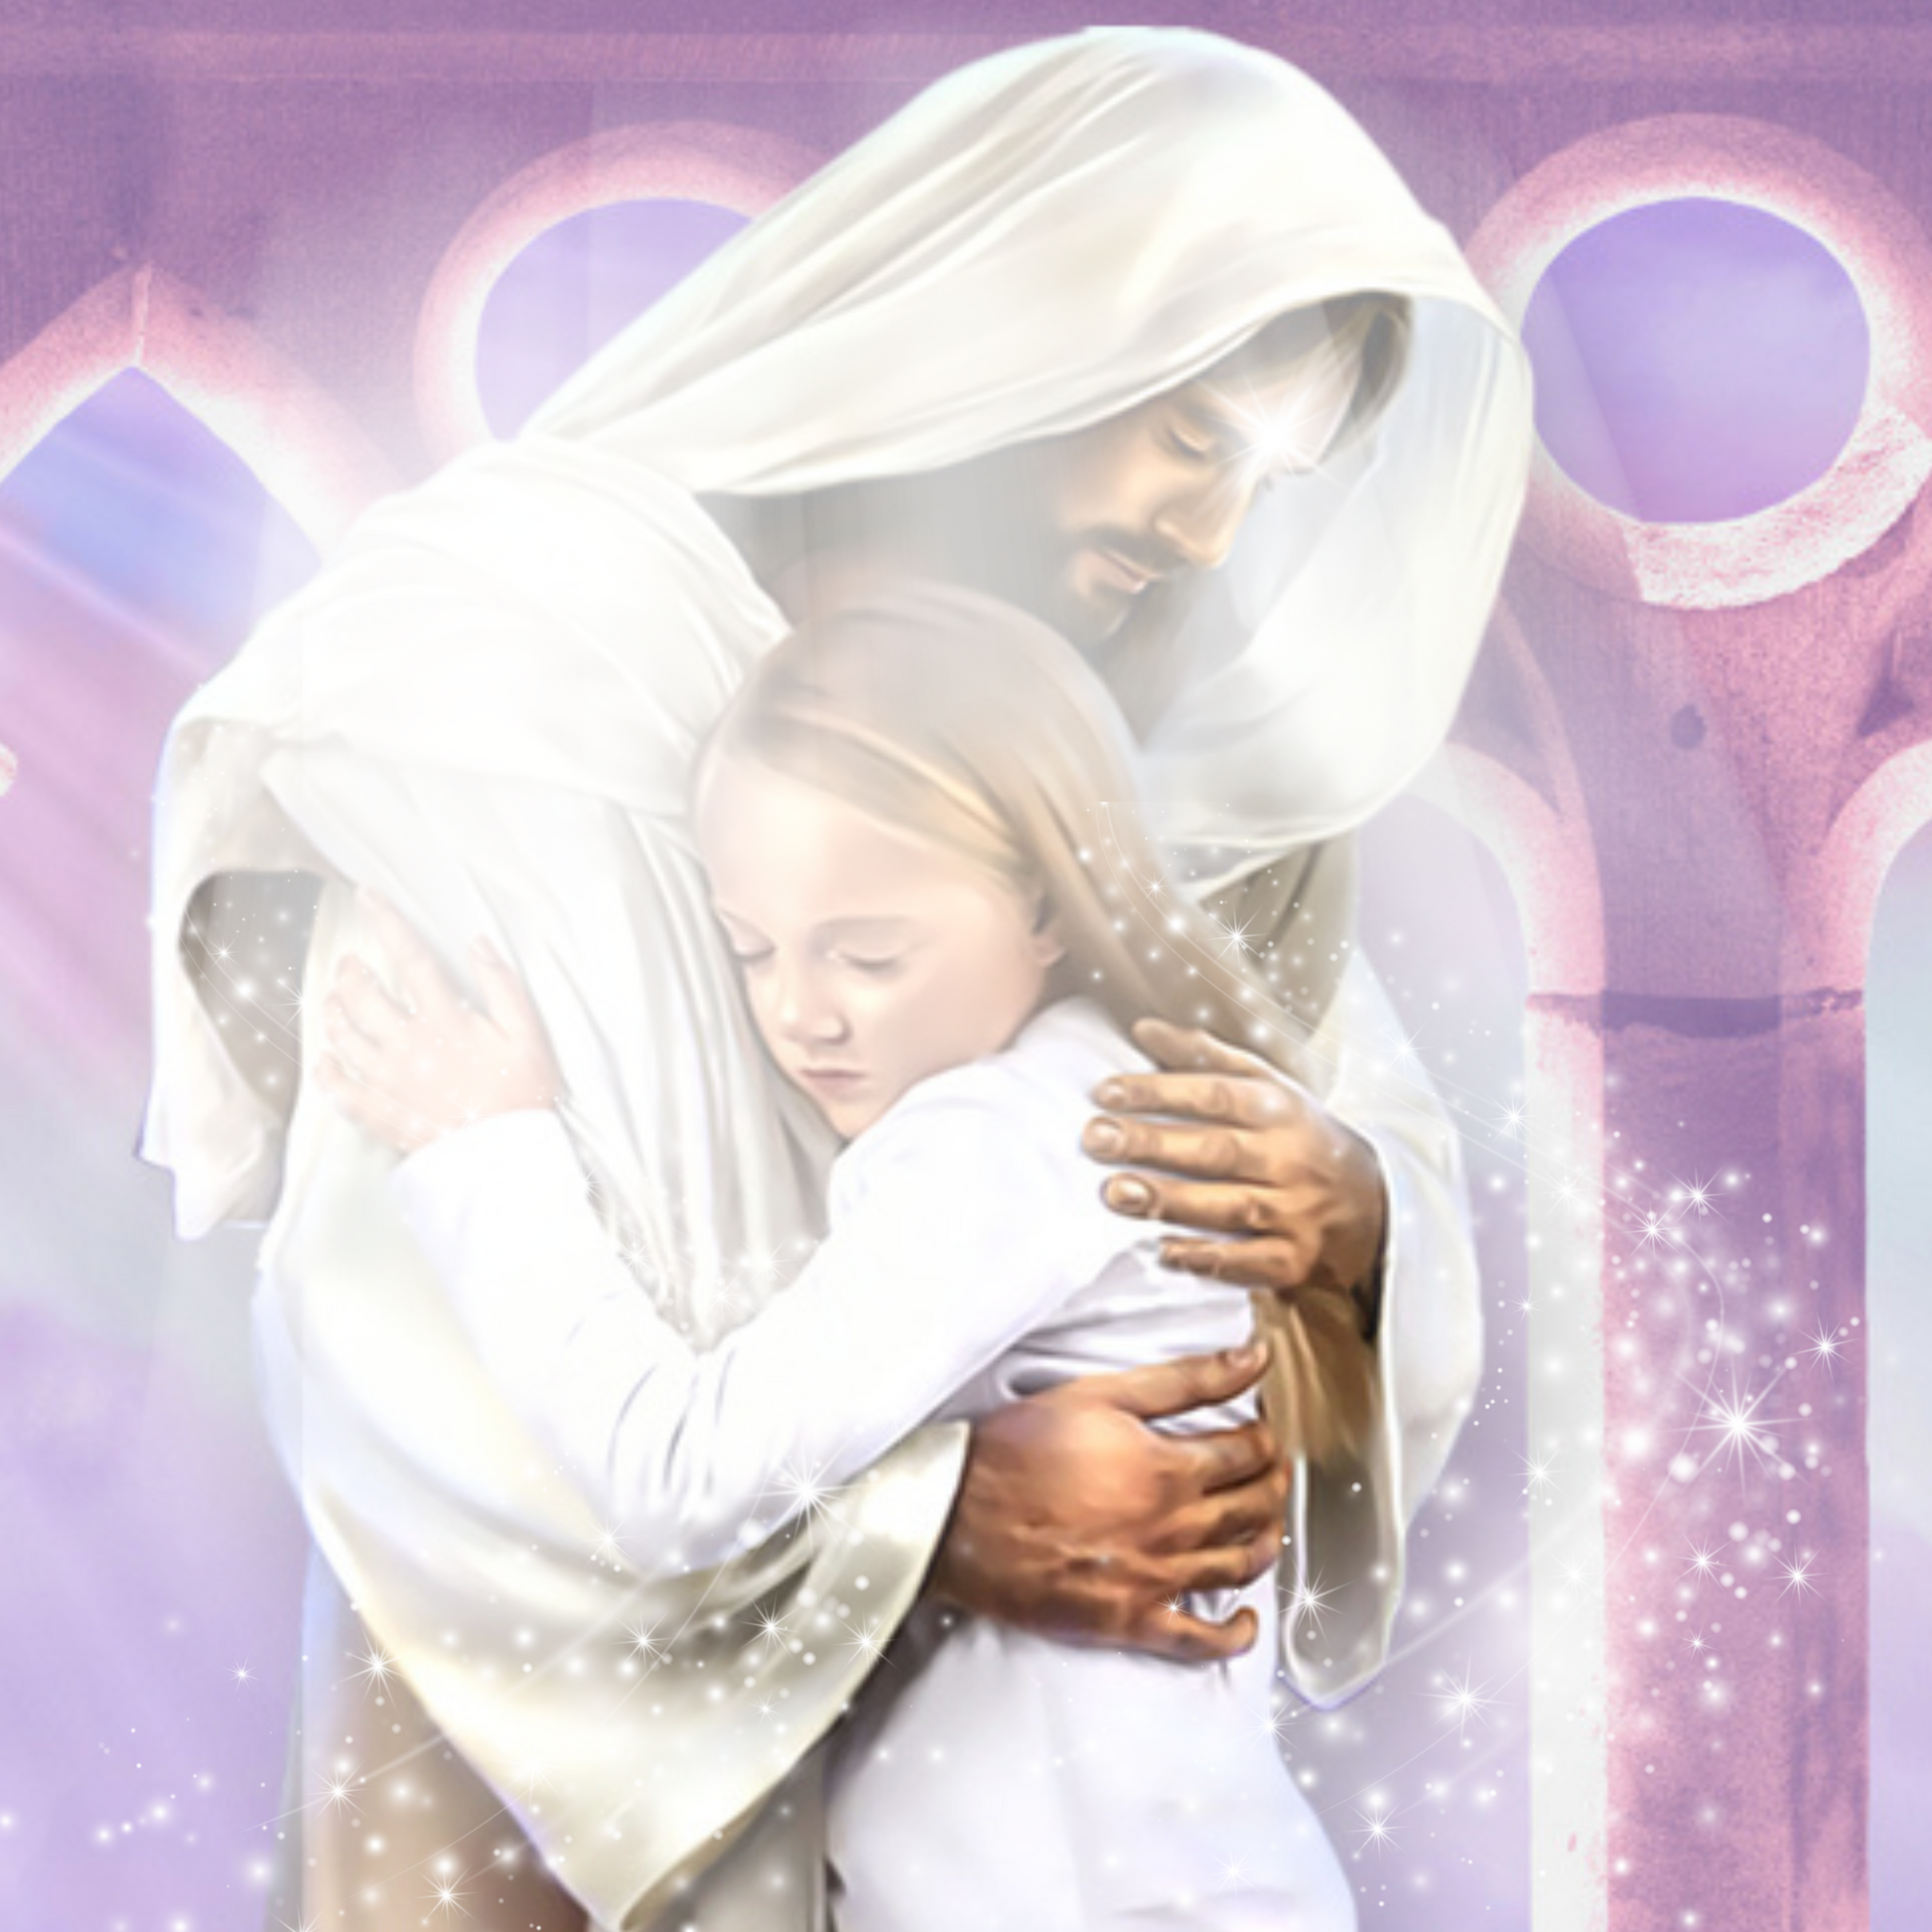 Jesus Christus nimmt ein kleines Mädchen in den Arm und tröstet sie. Er schickt ihr Liebe.